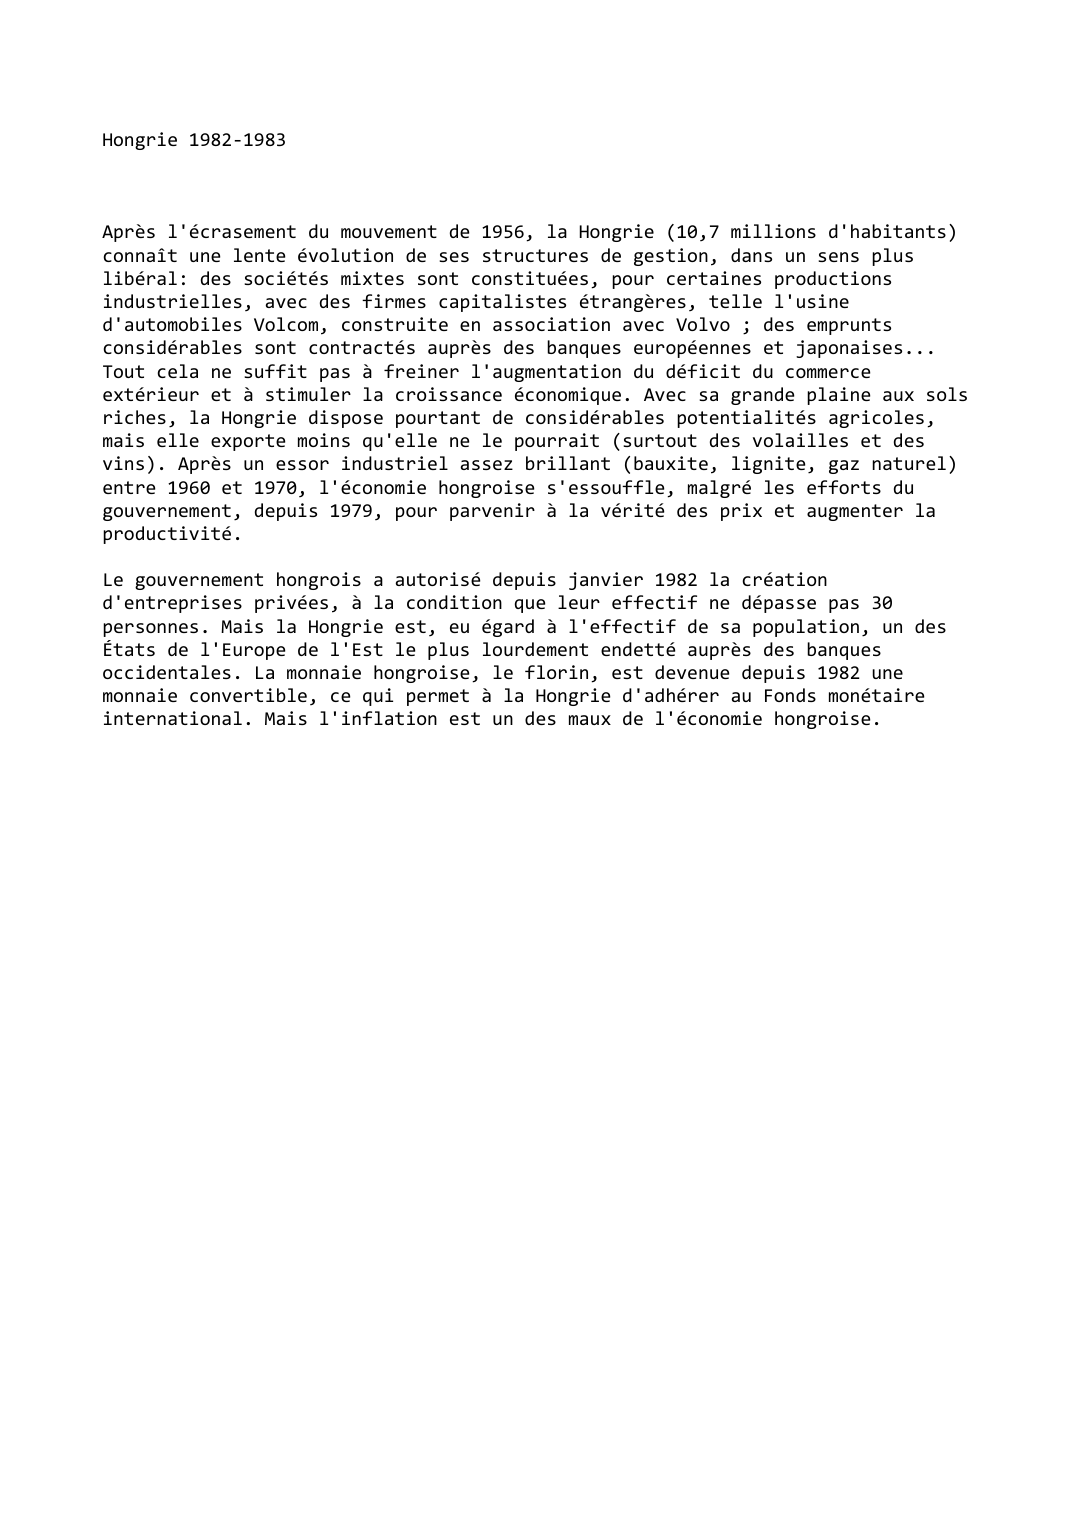 Prévisualisation du document Hongrie (1982-1983)